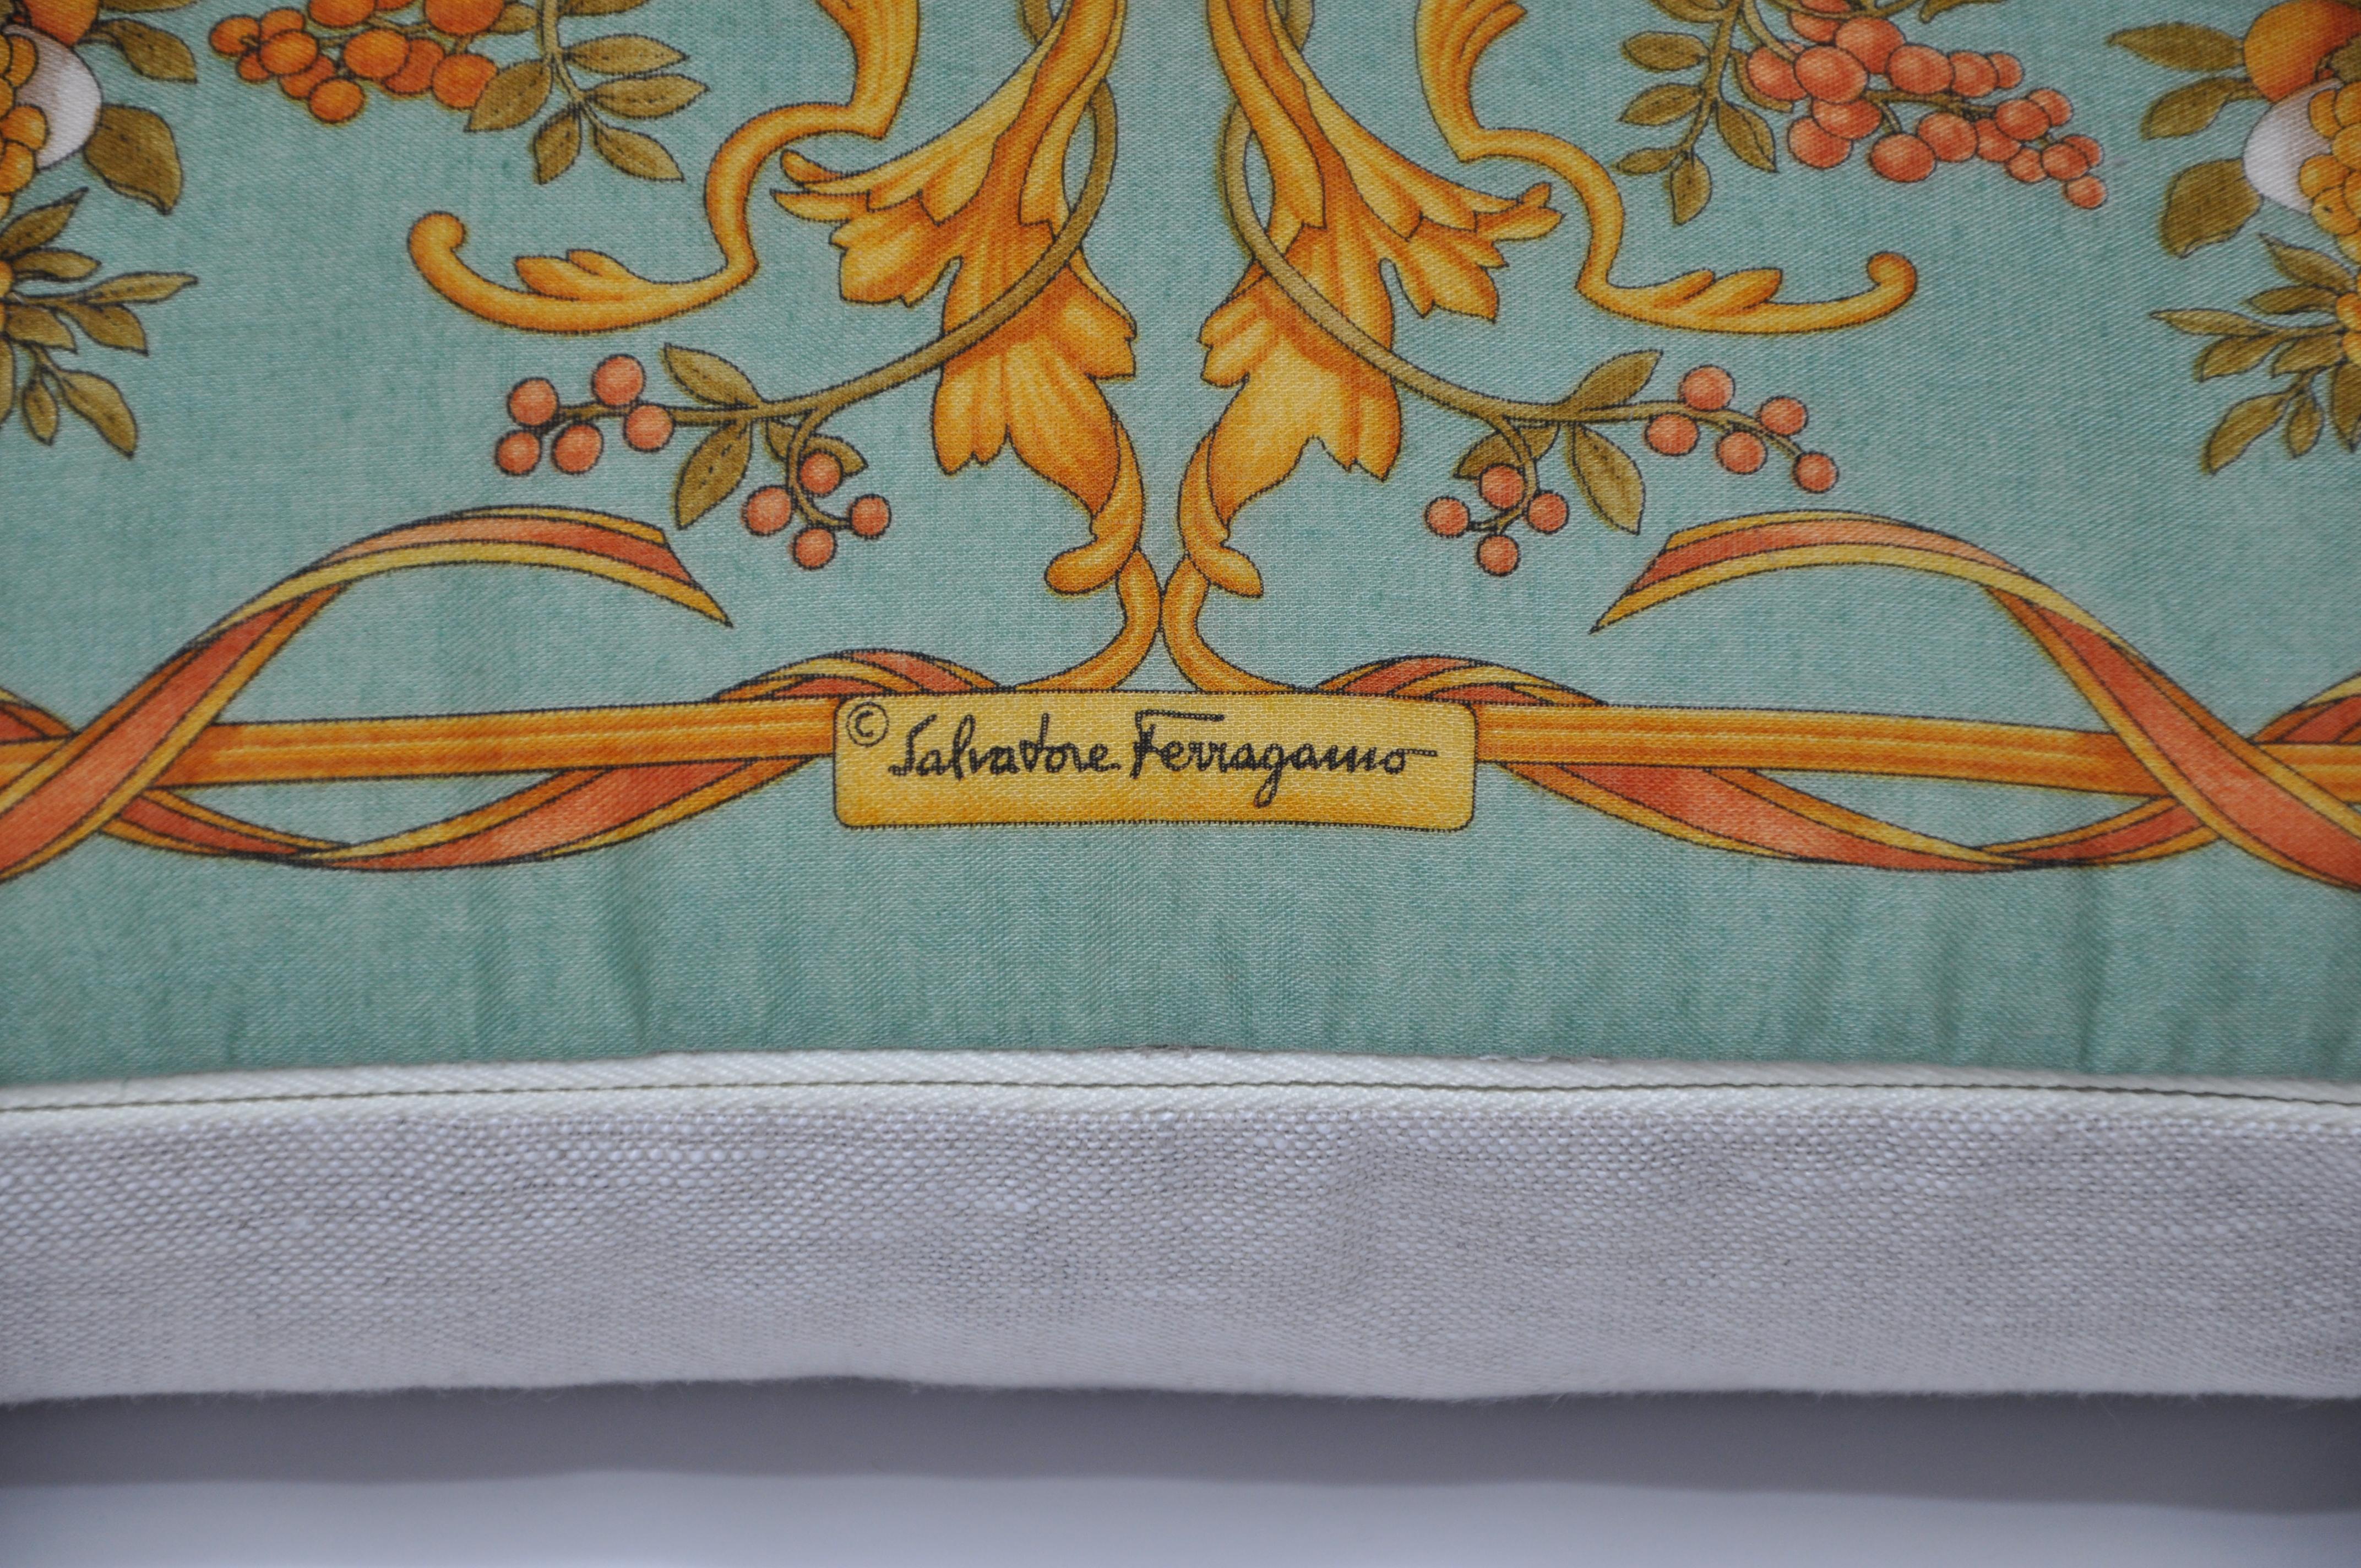 Le Studio Katie Larmour est le premier fabricant d'oreillers en forme de foulard vintage. Gagnant en notoriété pour son idée et ses créations uniques en 2013 - présentées dans des journaux comme le Financial Times, et vendues pour la première fois